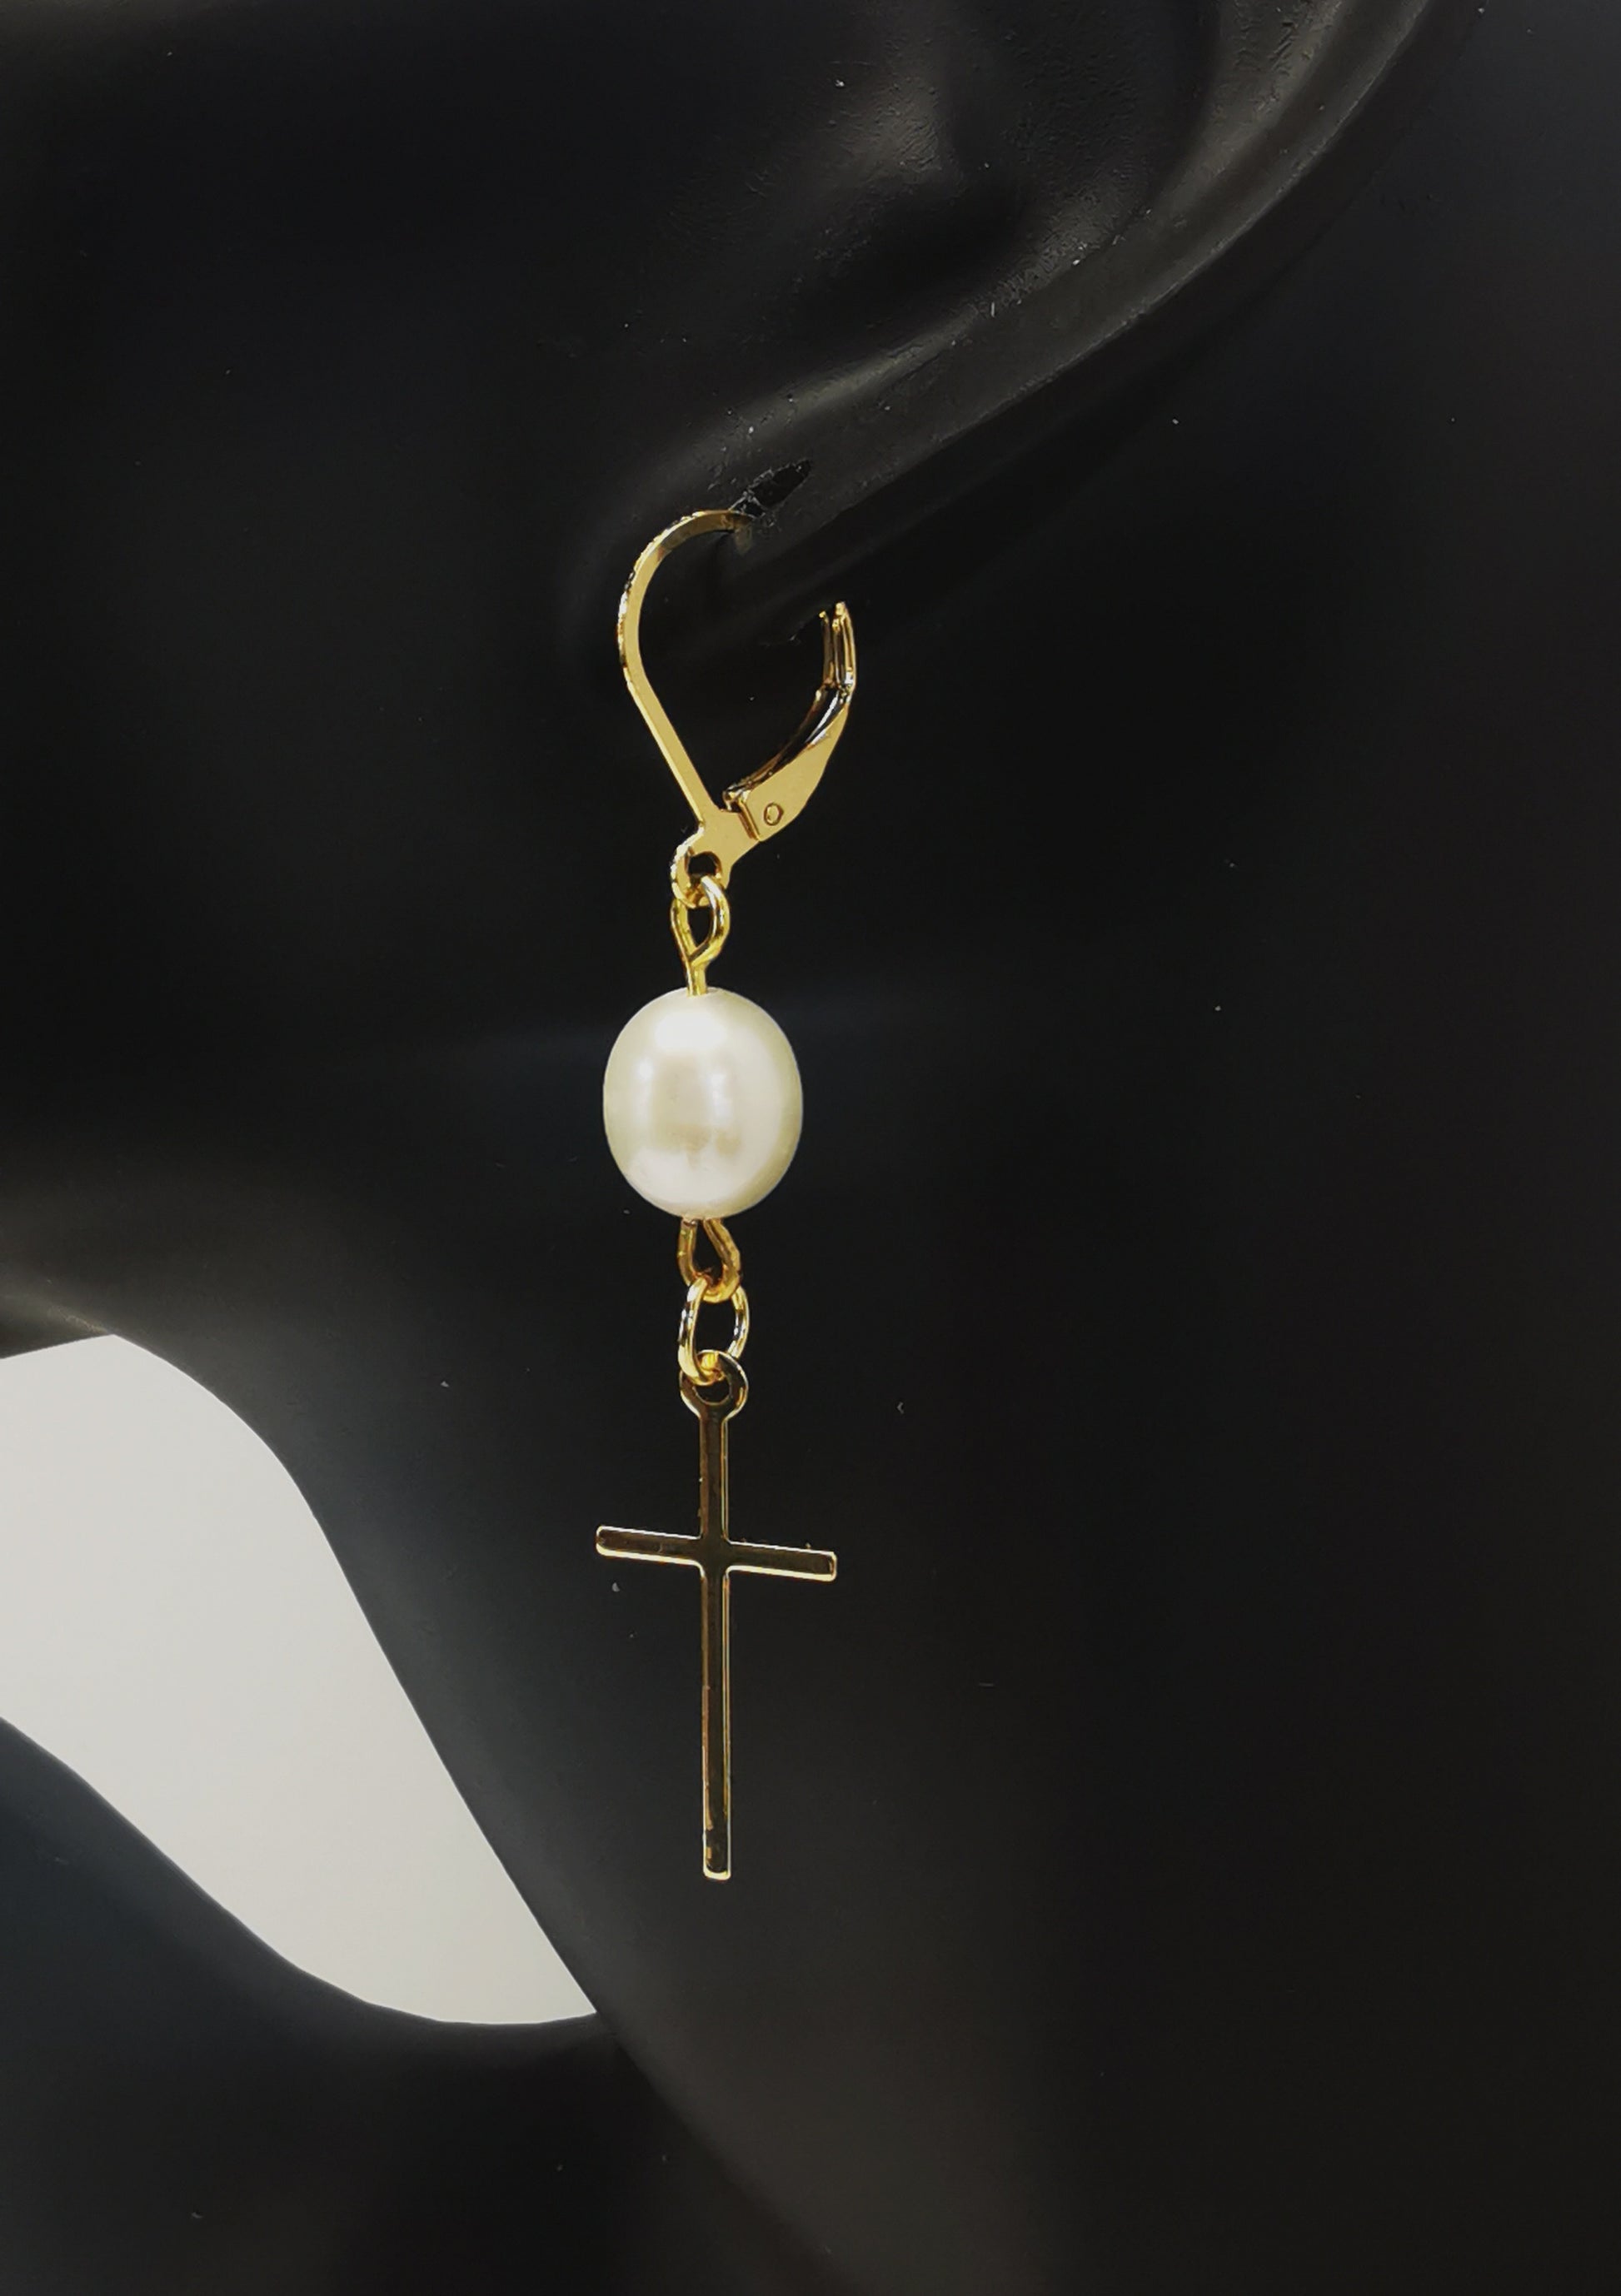 Une boucle d'oreilles perle de culture ovale 7-9mm blanche , accrochée sous dormeuse plaquée or. Sous la perle est suspendue une croix plaquée or de 22x10mm. Présentée accrochée à l'oreille d'un mannequin buste. Vue de coté.